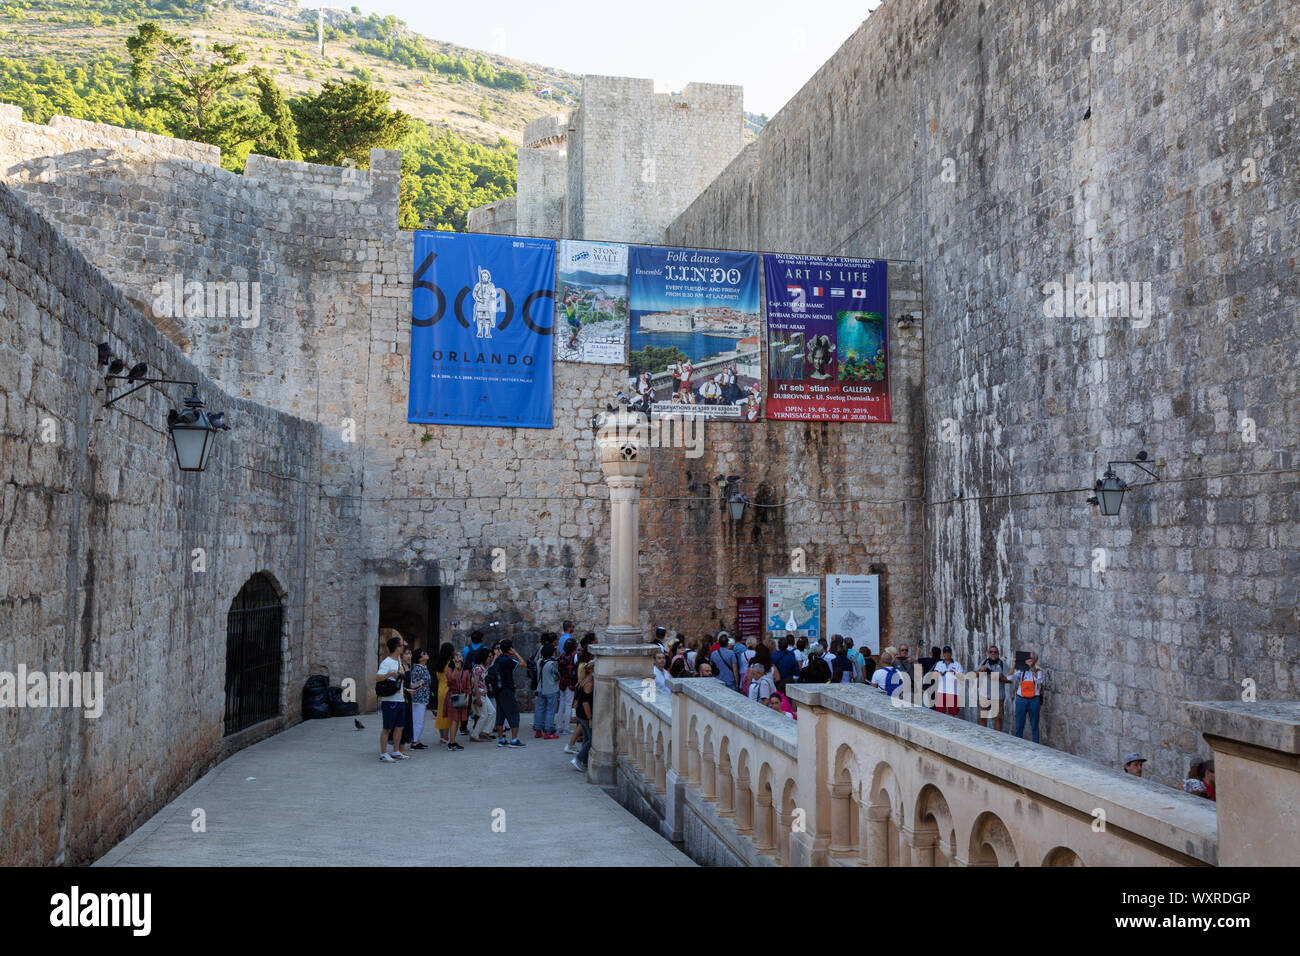 Dubrovnik Pile - Touristen eingabe Dunbrovnik Altstadt zum Weltkulturerbe der UNESCO über das Pile Tor in der Stadtmauer, Dubrovnik, Kroatien Europa Stockfoto